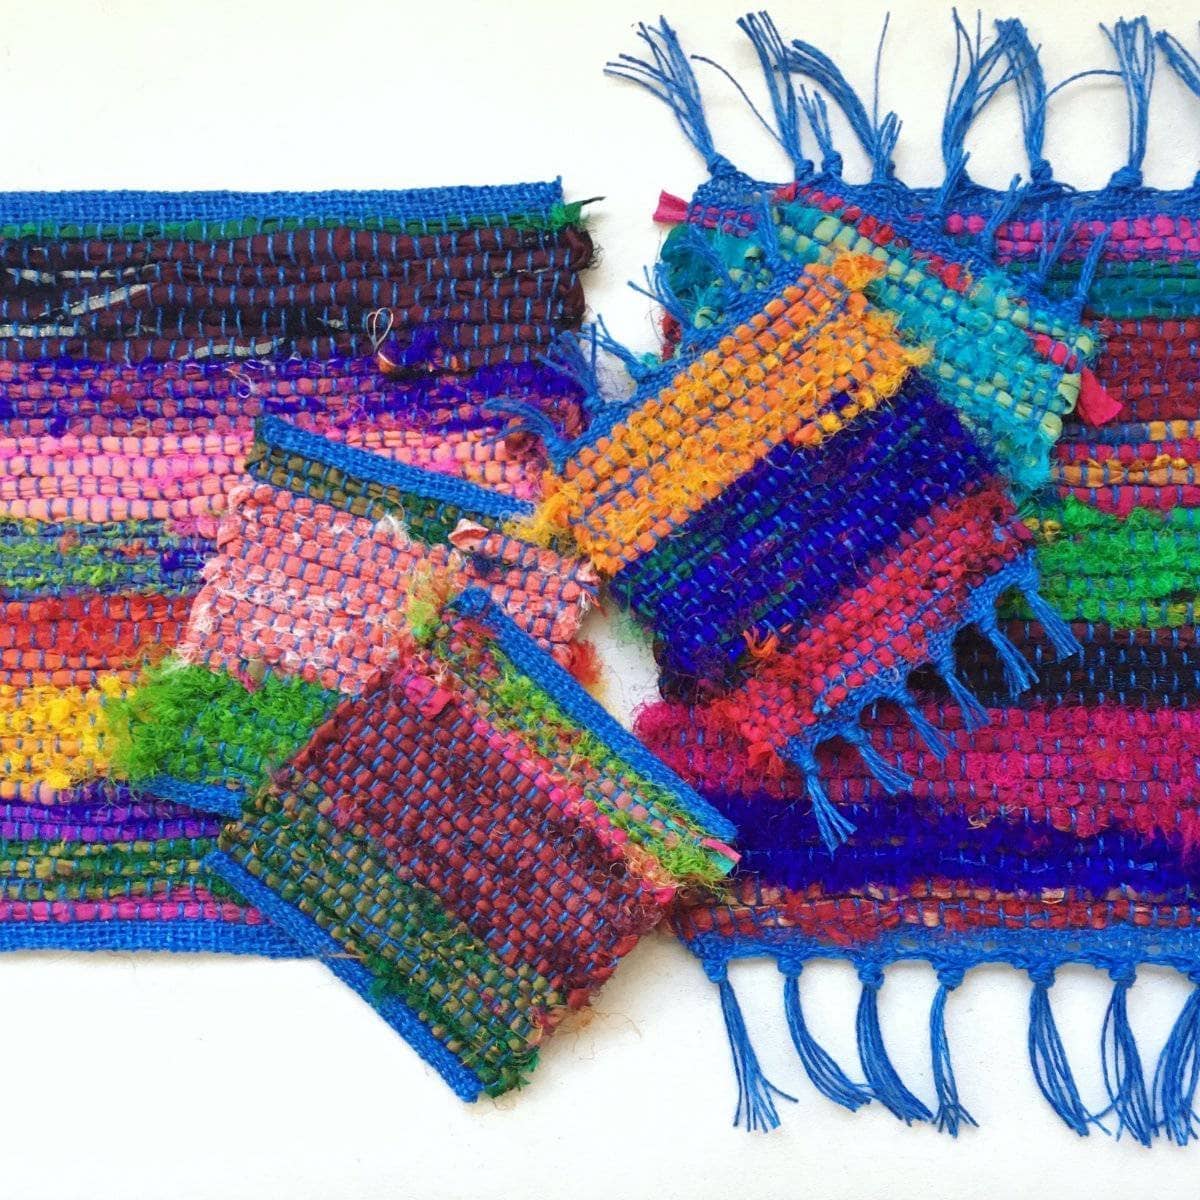 DIY Crocheting Weaving Looming Looming Kit For Beginner Knitting